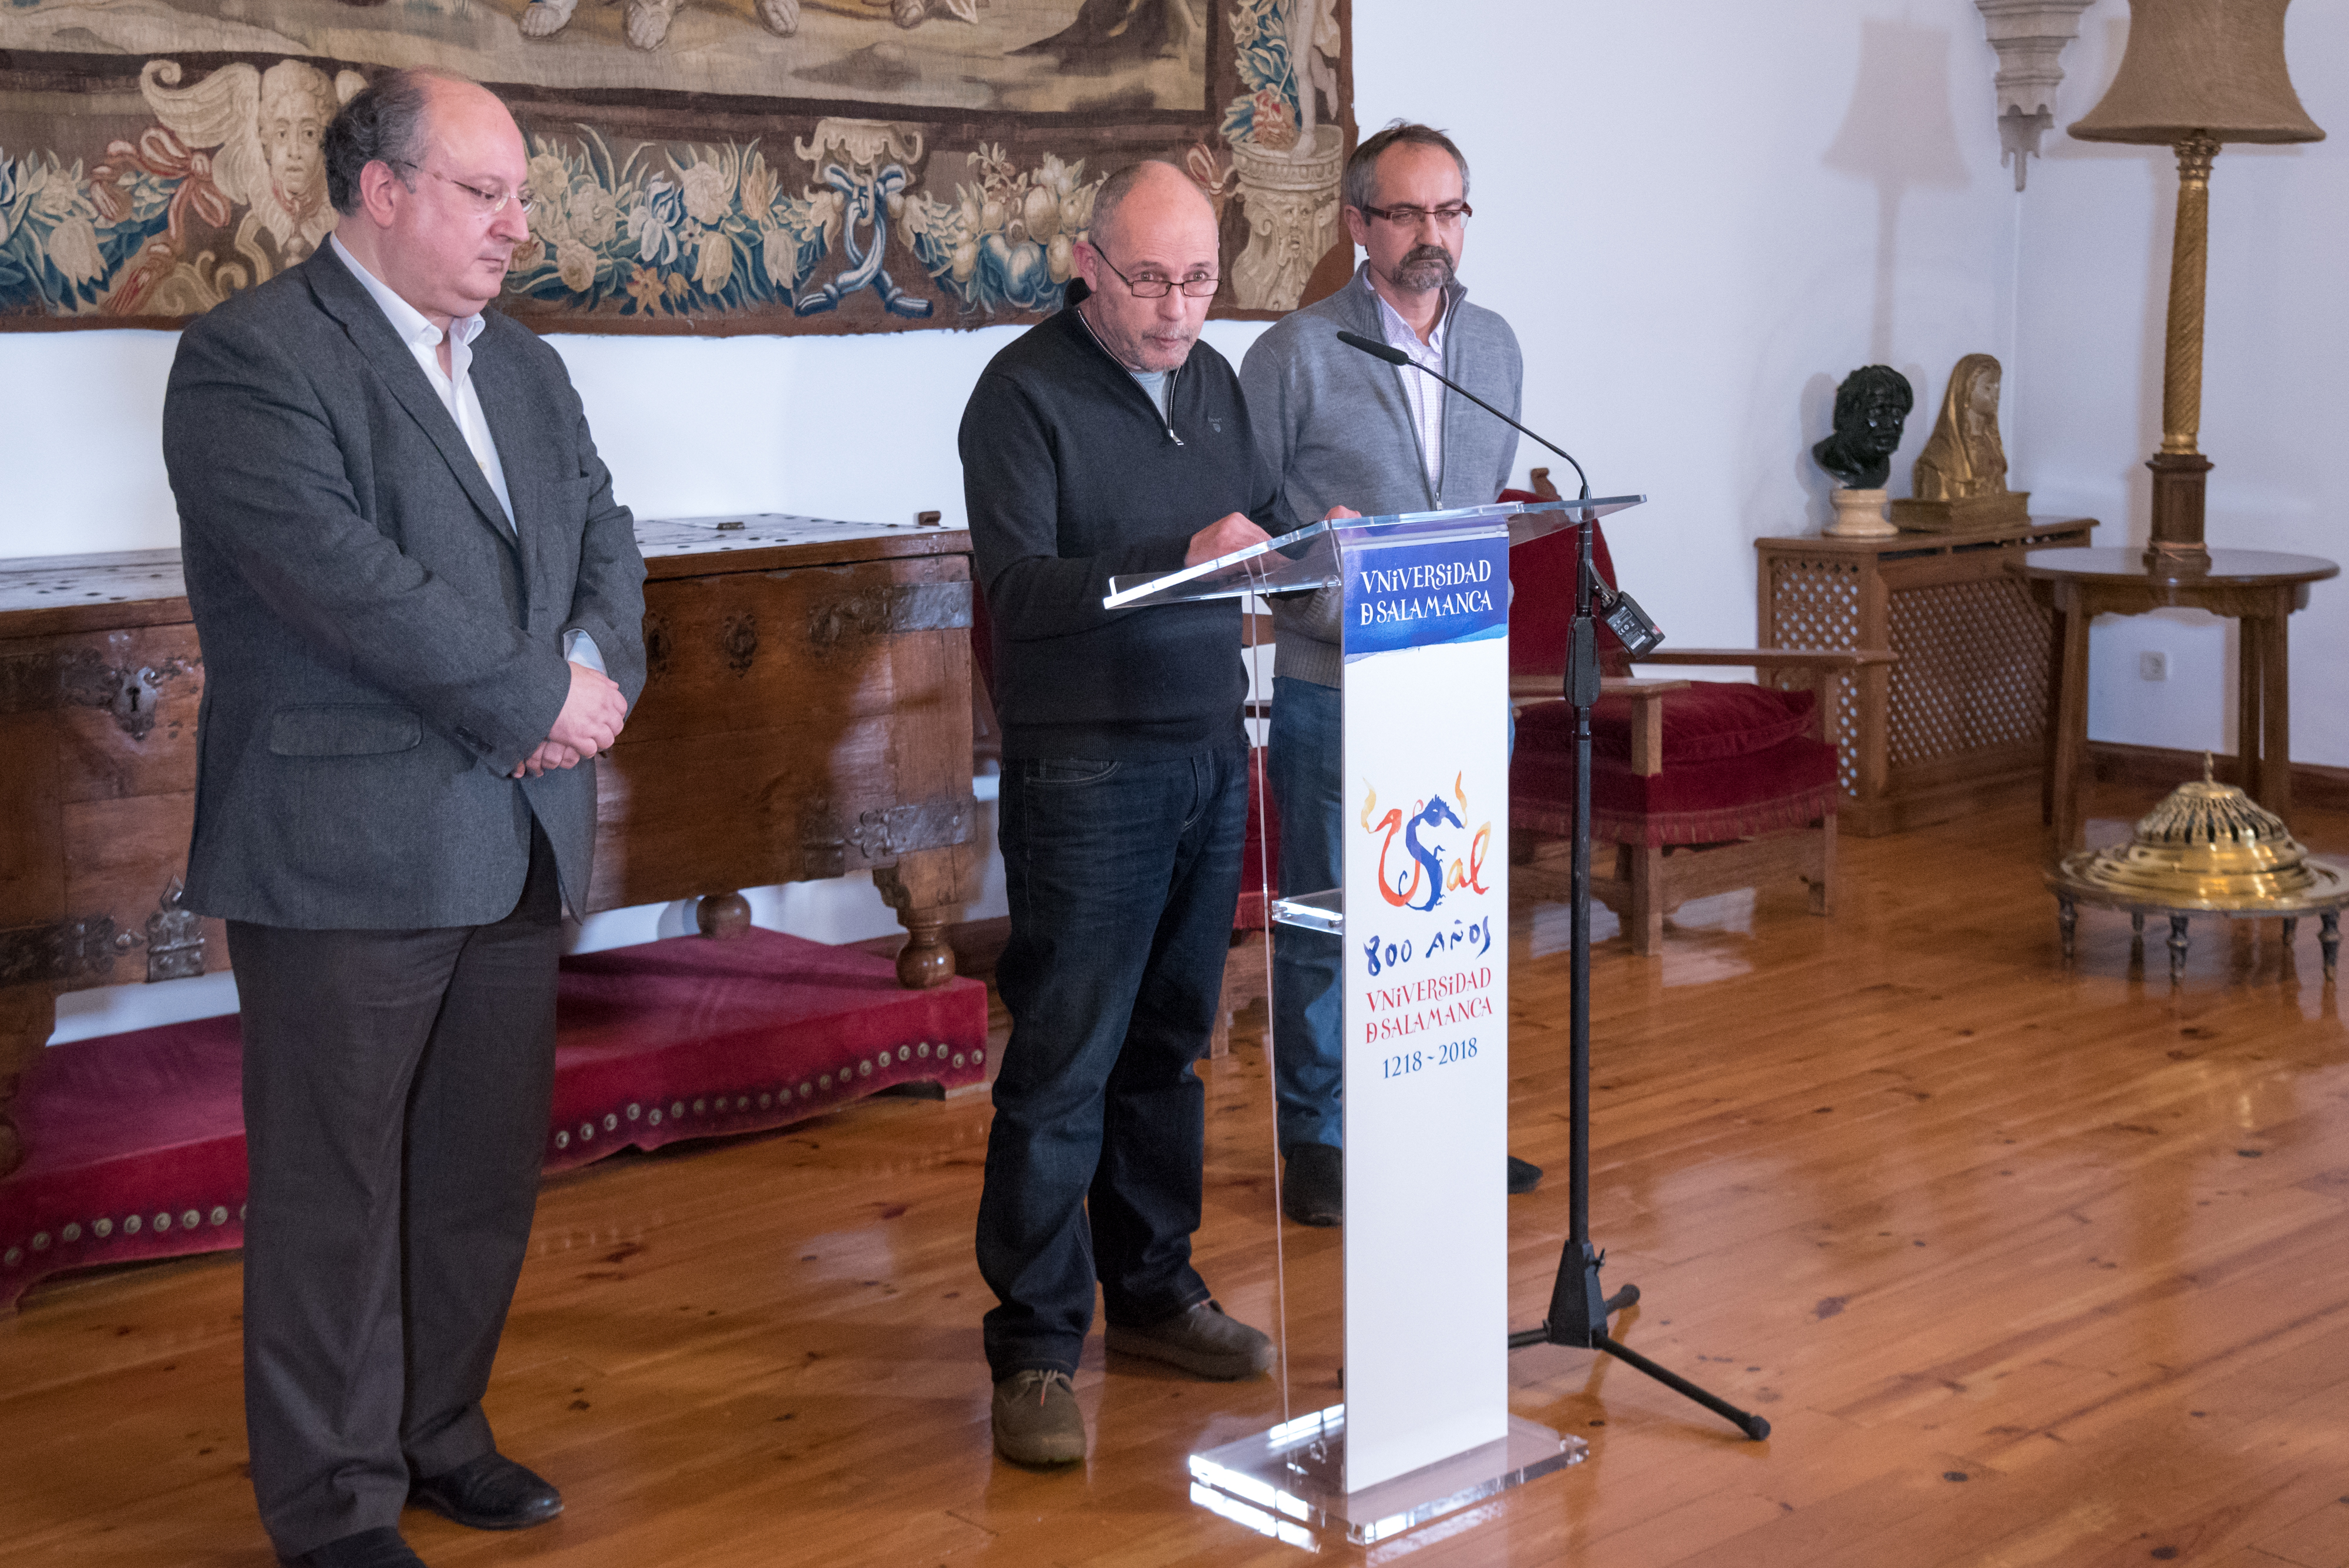 La Universidad de Salamanca apuesta por una programación cultural coordinada para combinar las propuestas extraordinarias con la oferta habitual